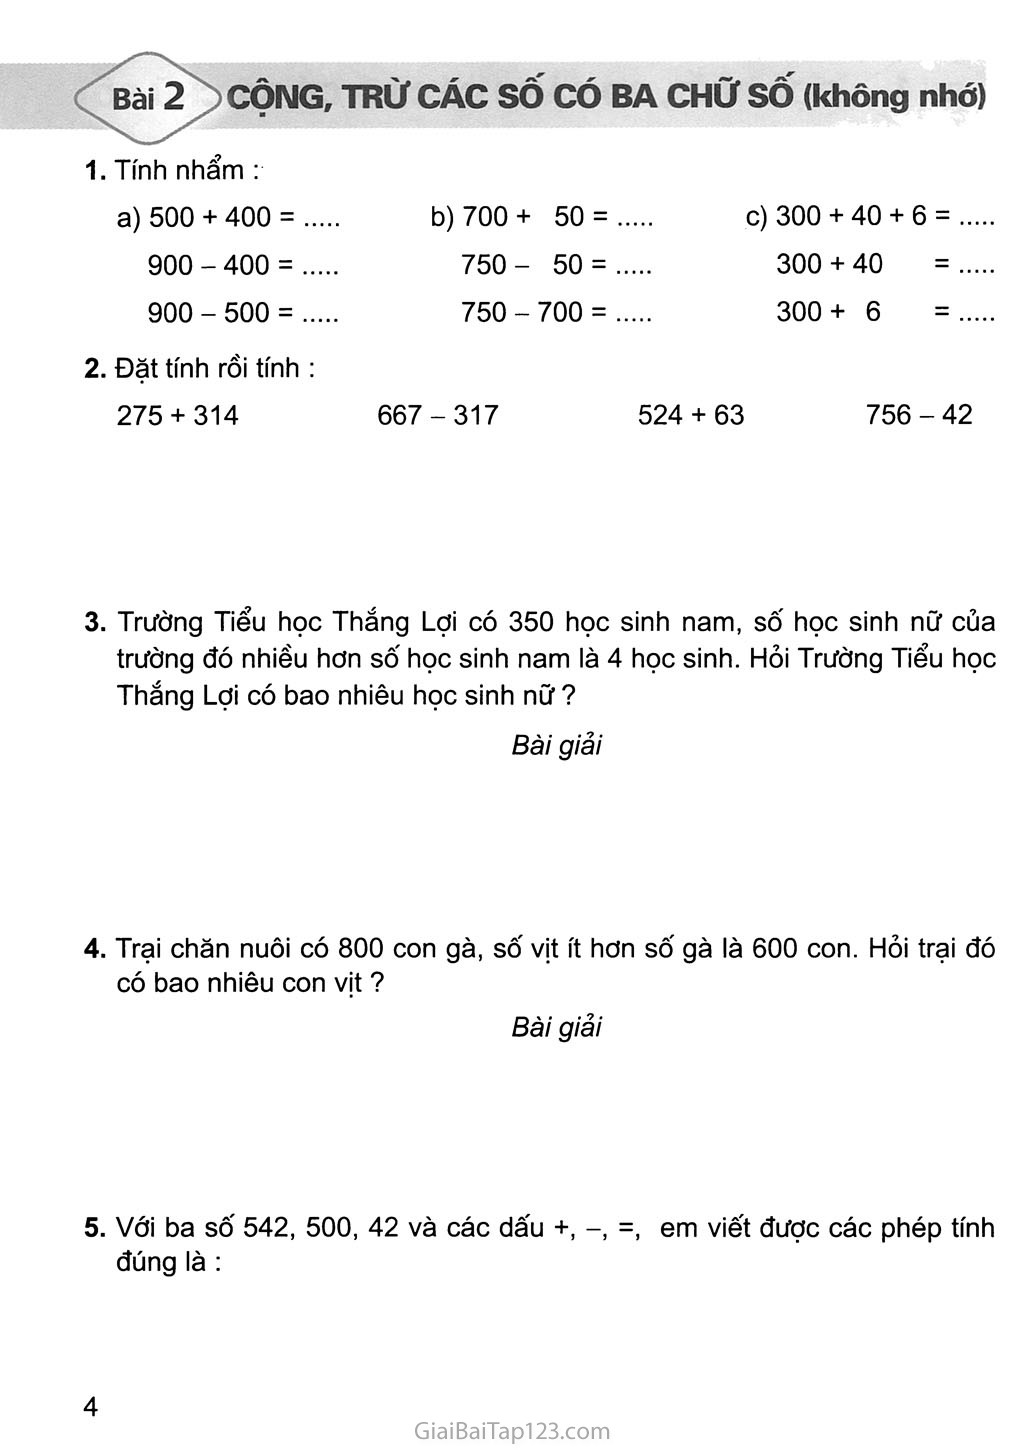 Bài 2: Cộng, trừ các số có ba chữ số (không nhớ) trang 1